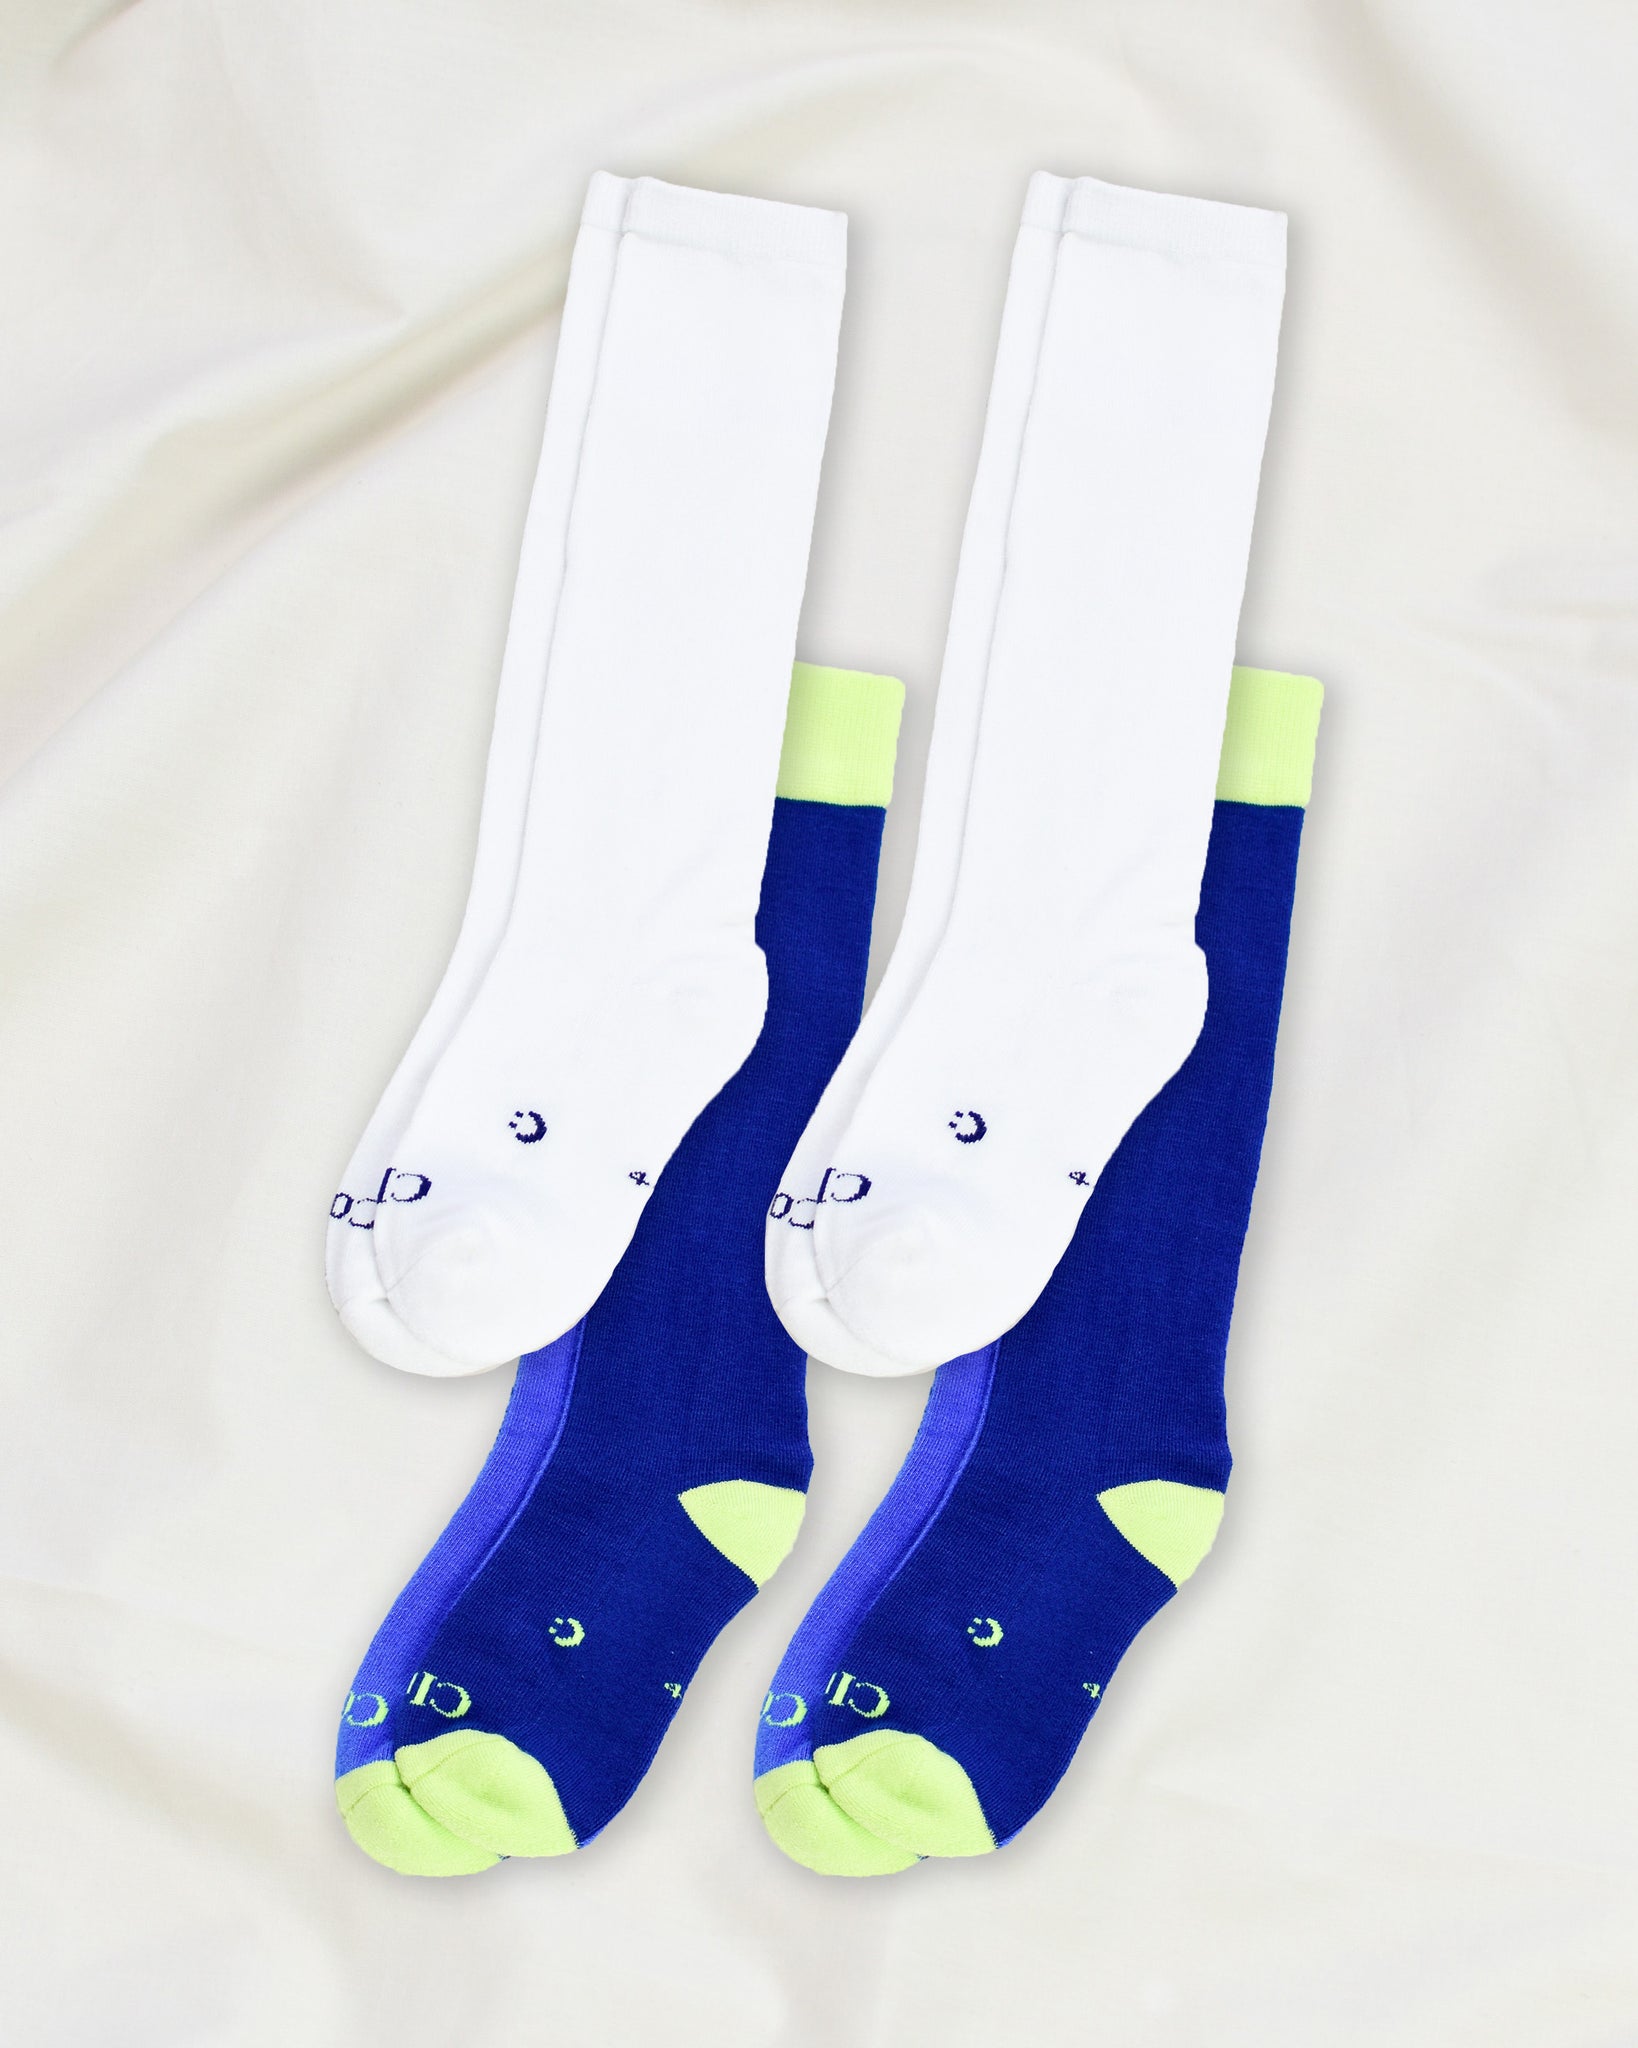 Everyday Knee-High Seamless Feel Socks 4 Pack (Kids) - White/Marine Blue